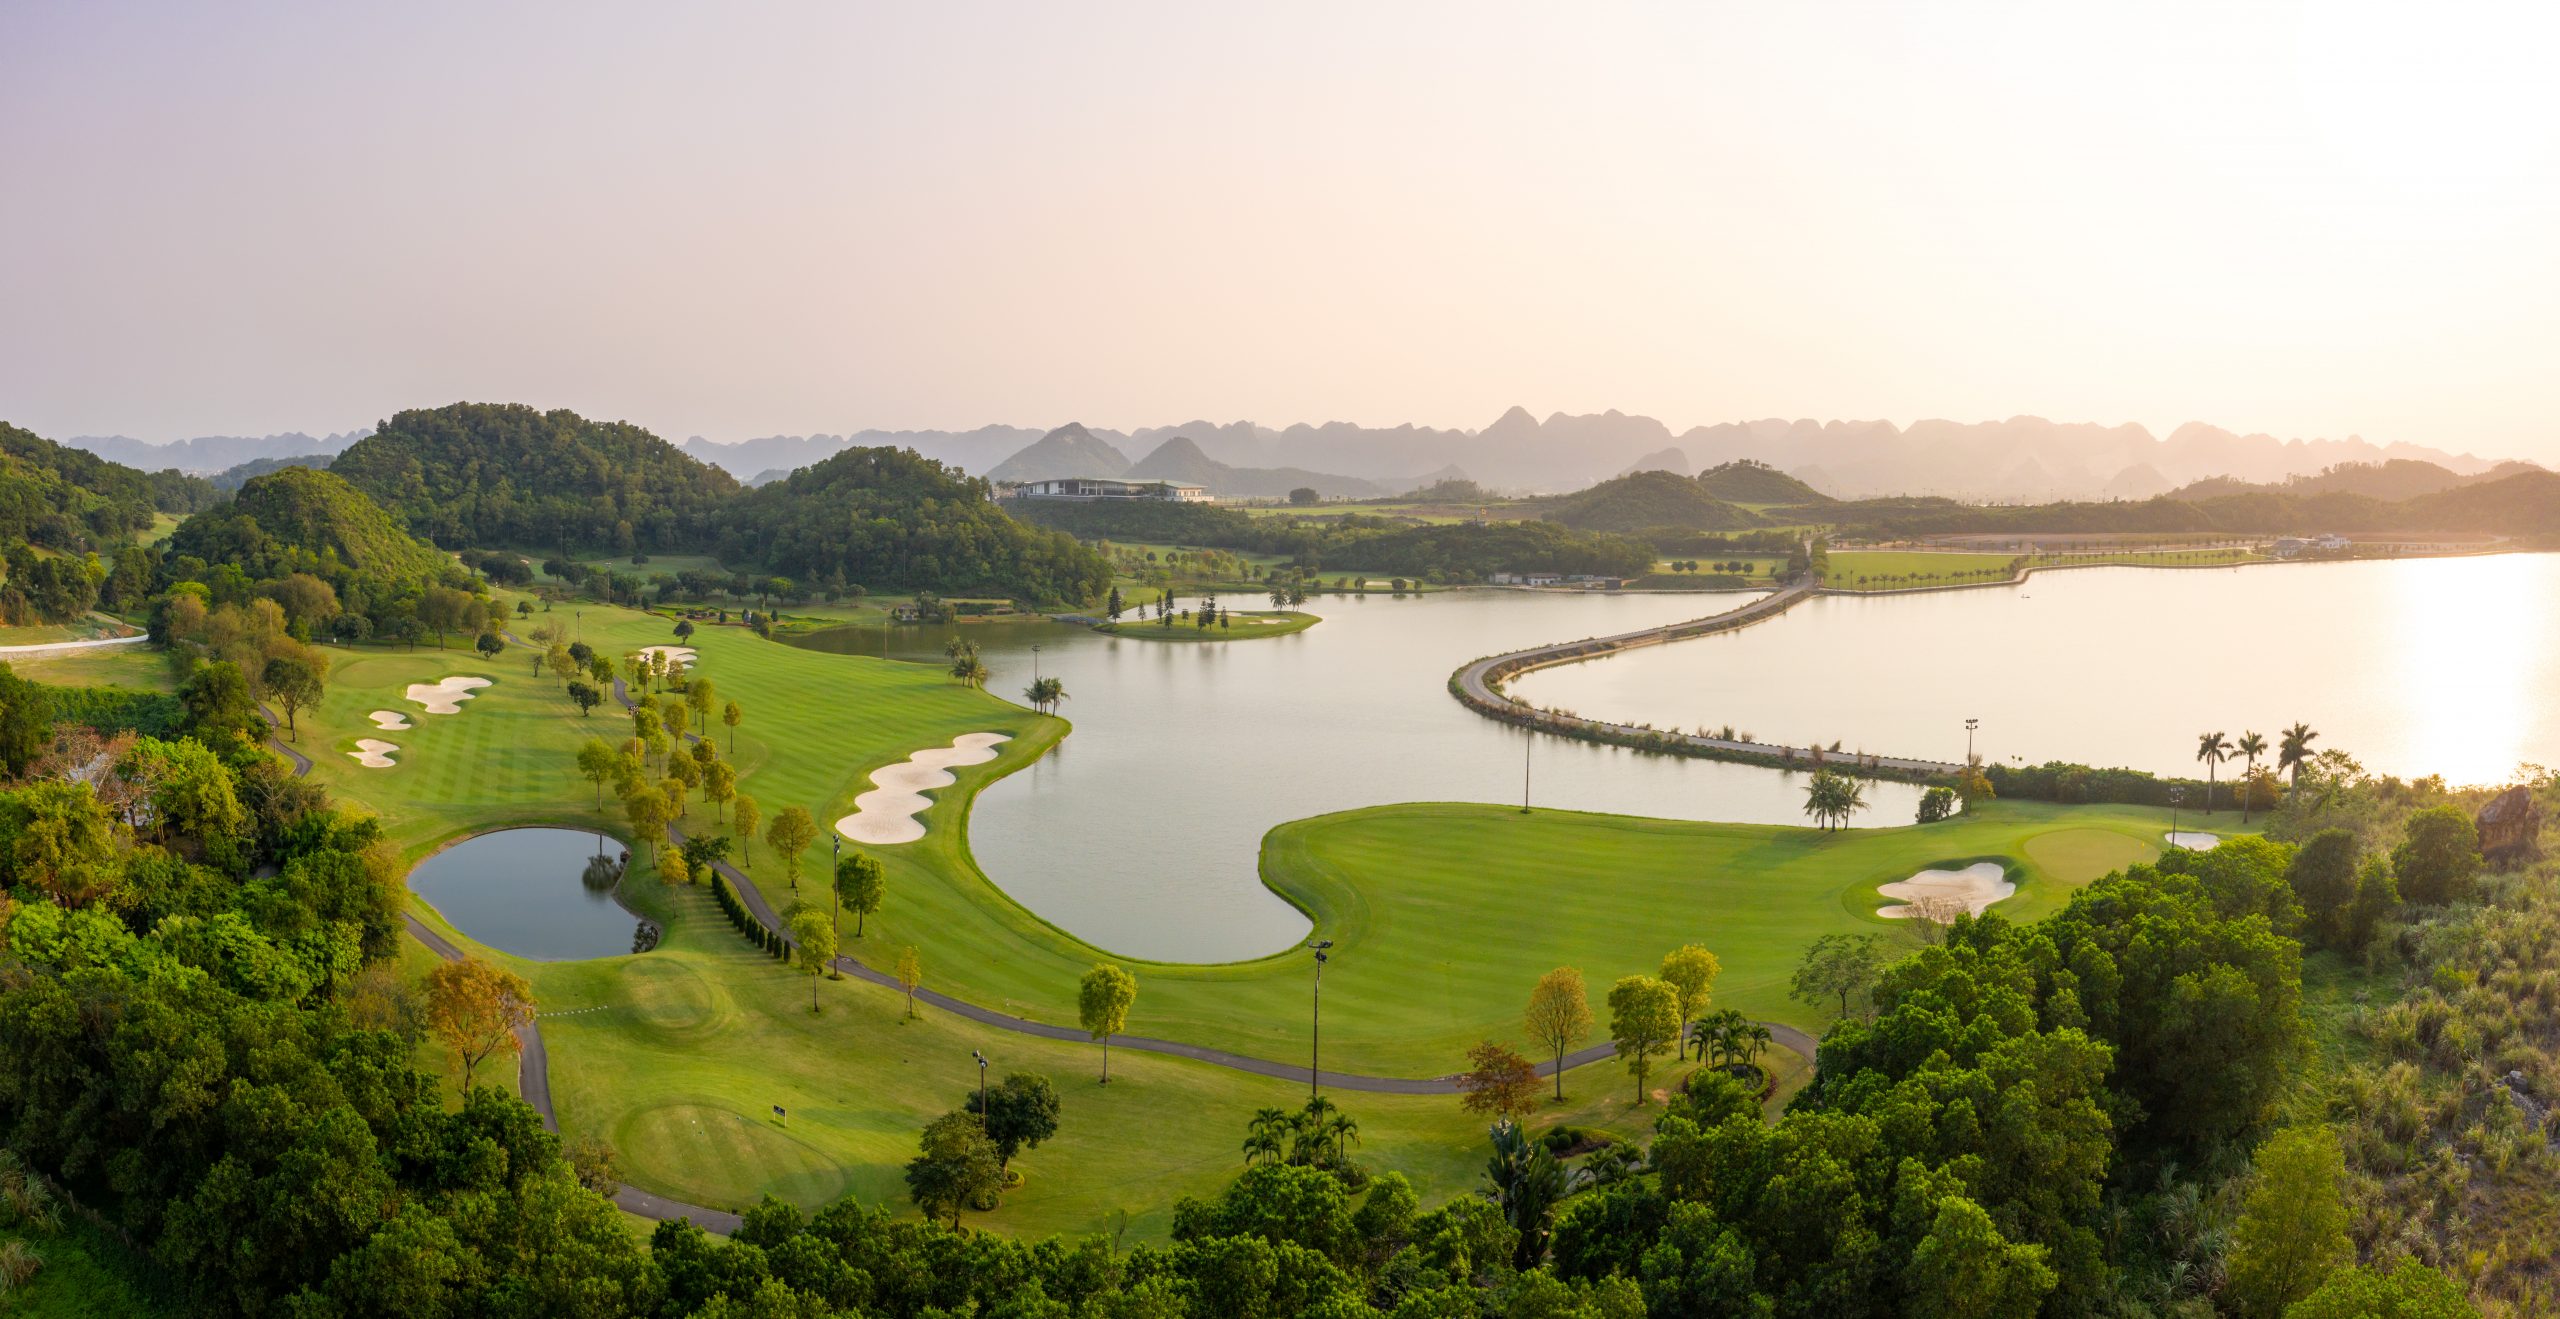 Hồ sơ doanh nghiệp - Danh tính ông chủ của dự án sân golf vướng loạt sai phạm ở Ninh Bình